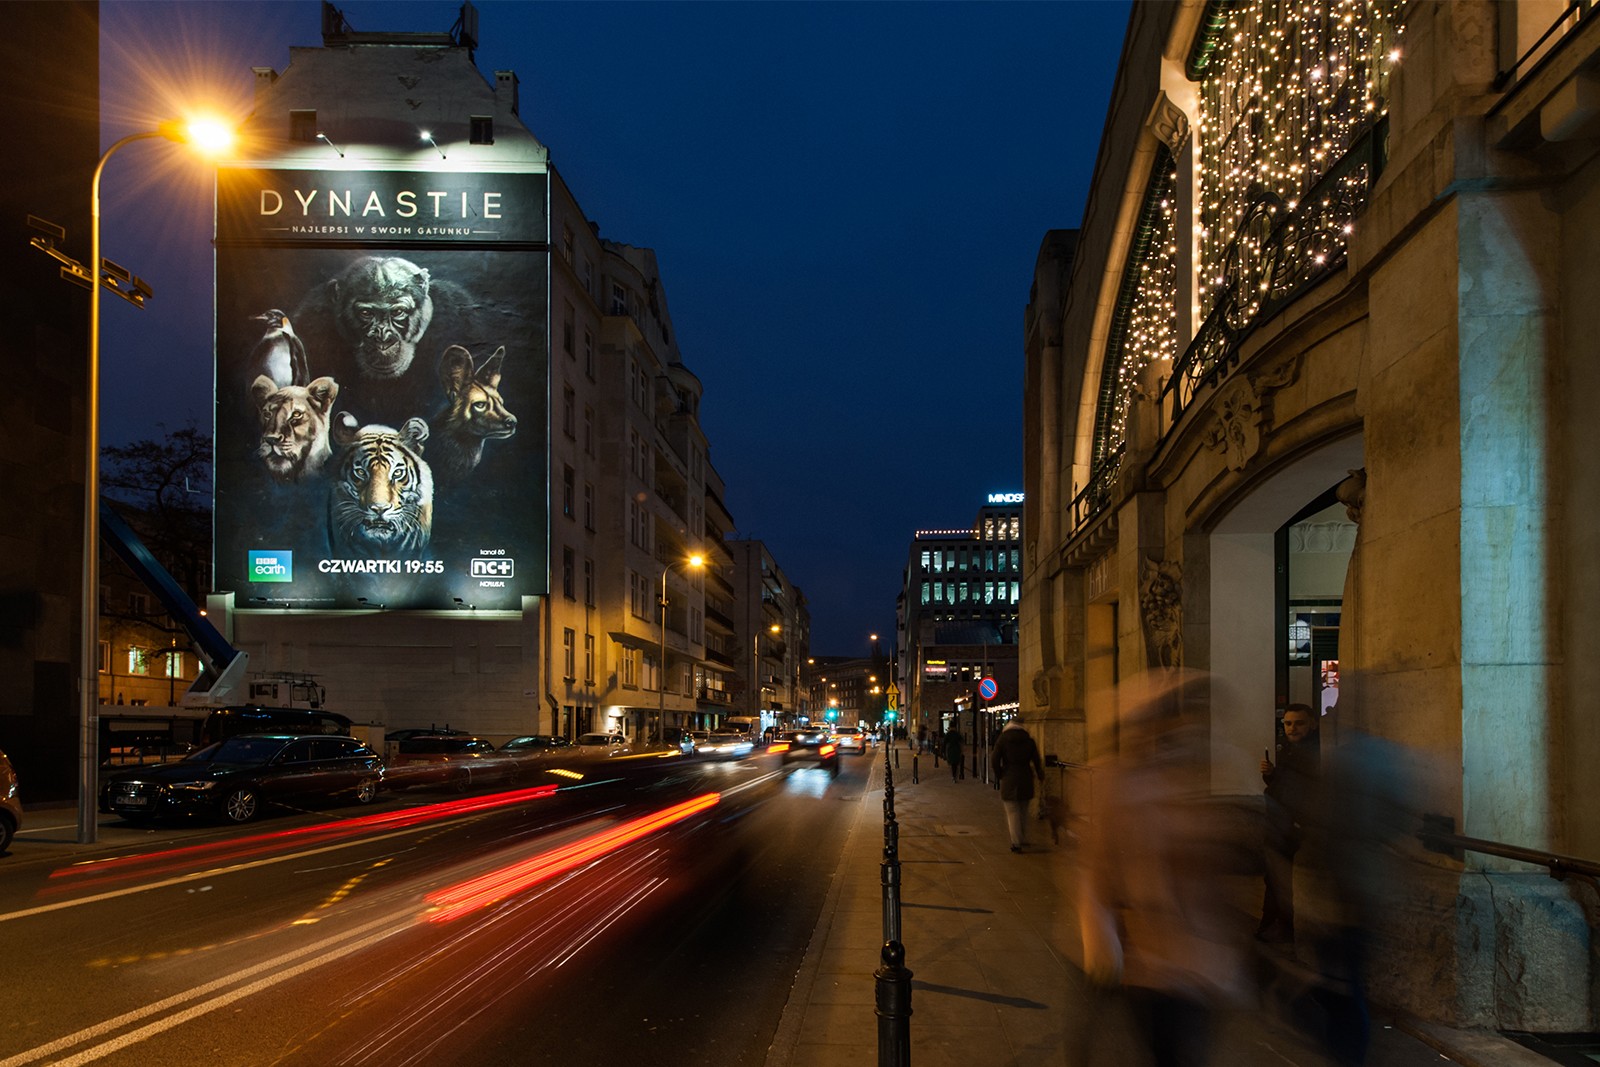 Mural reklamowy dla BBC Earth przy ul. Pięknej w Warszawie w nocy | The Dynasties | Portfolio